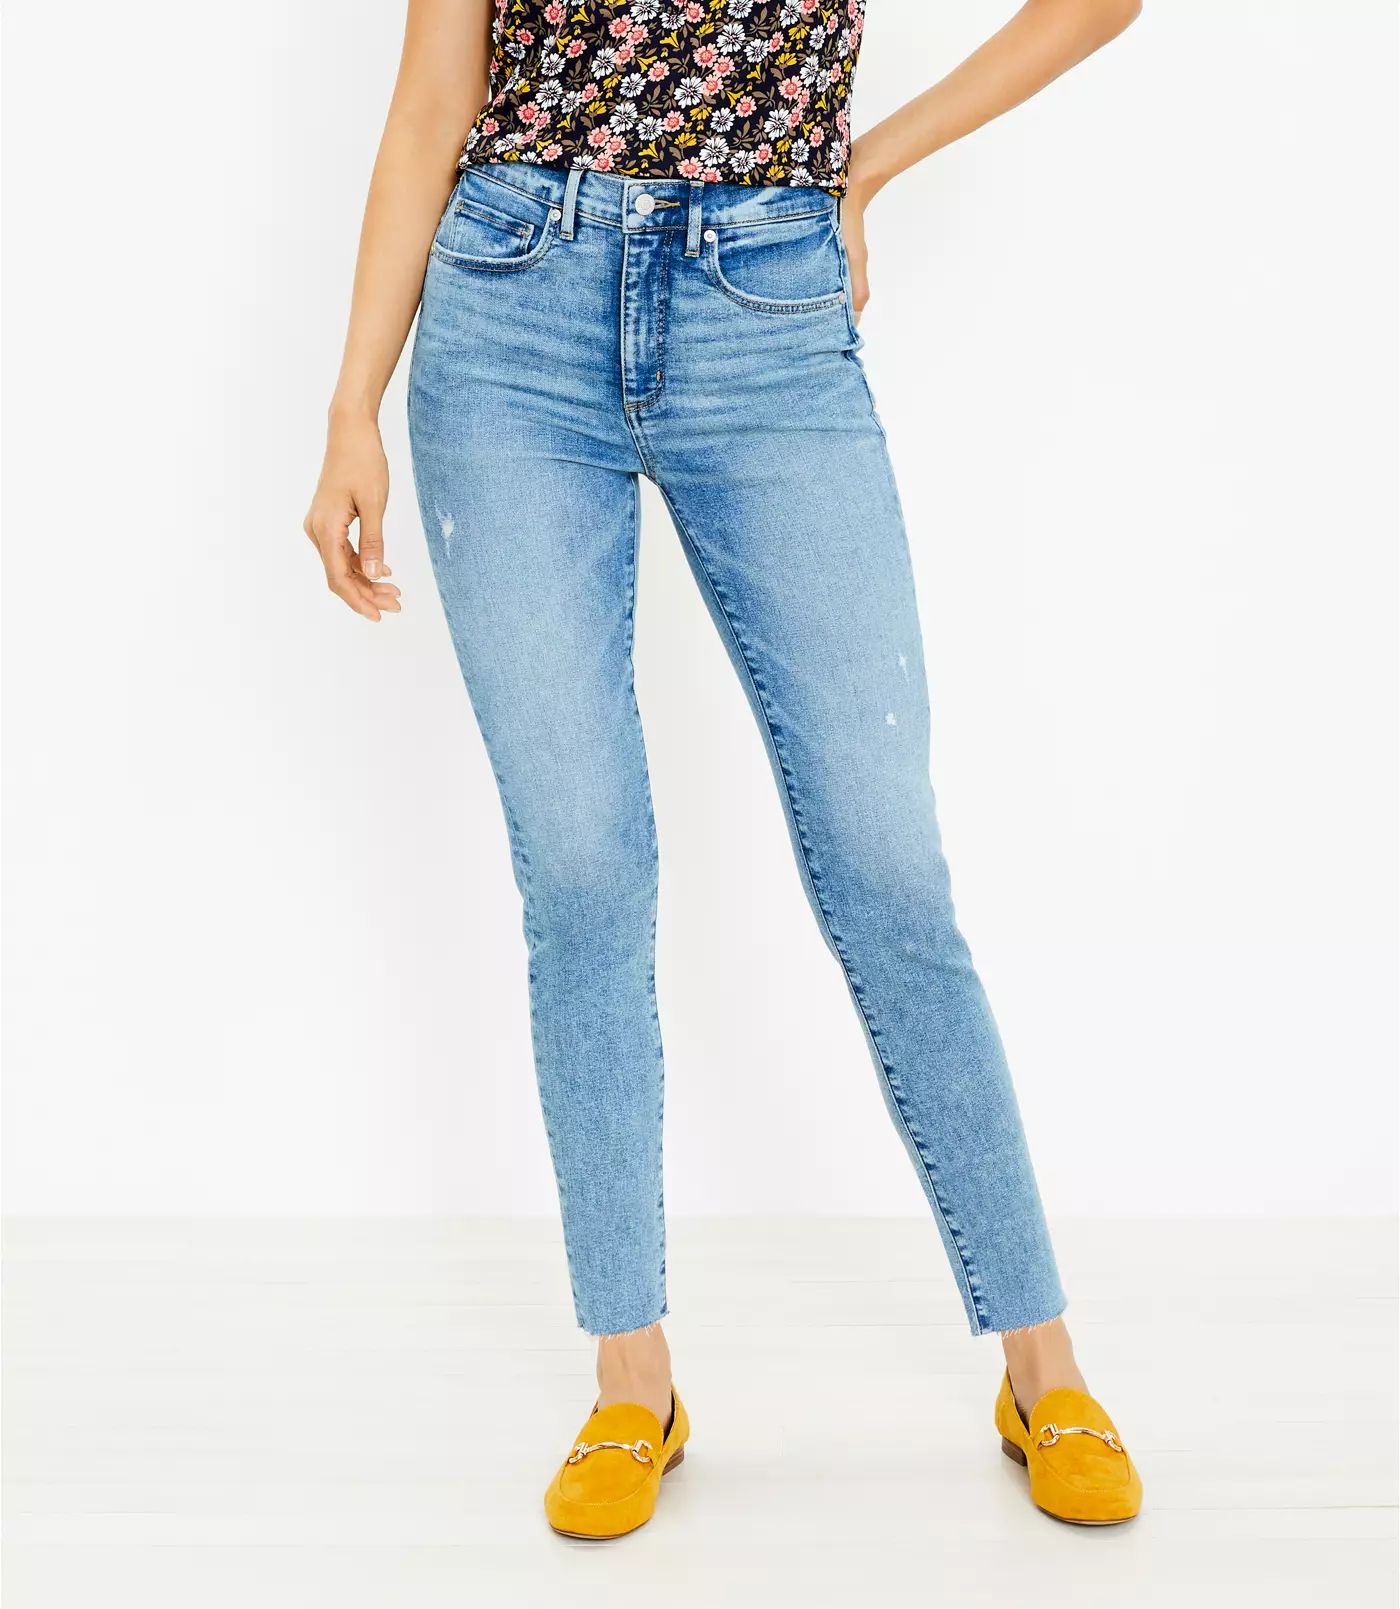 Curvy Fresh Cut High Rise Skinny Jeans in Classic Light Indigo Wash | LOFT